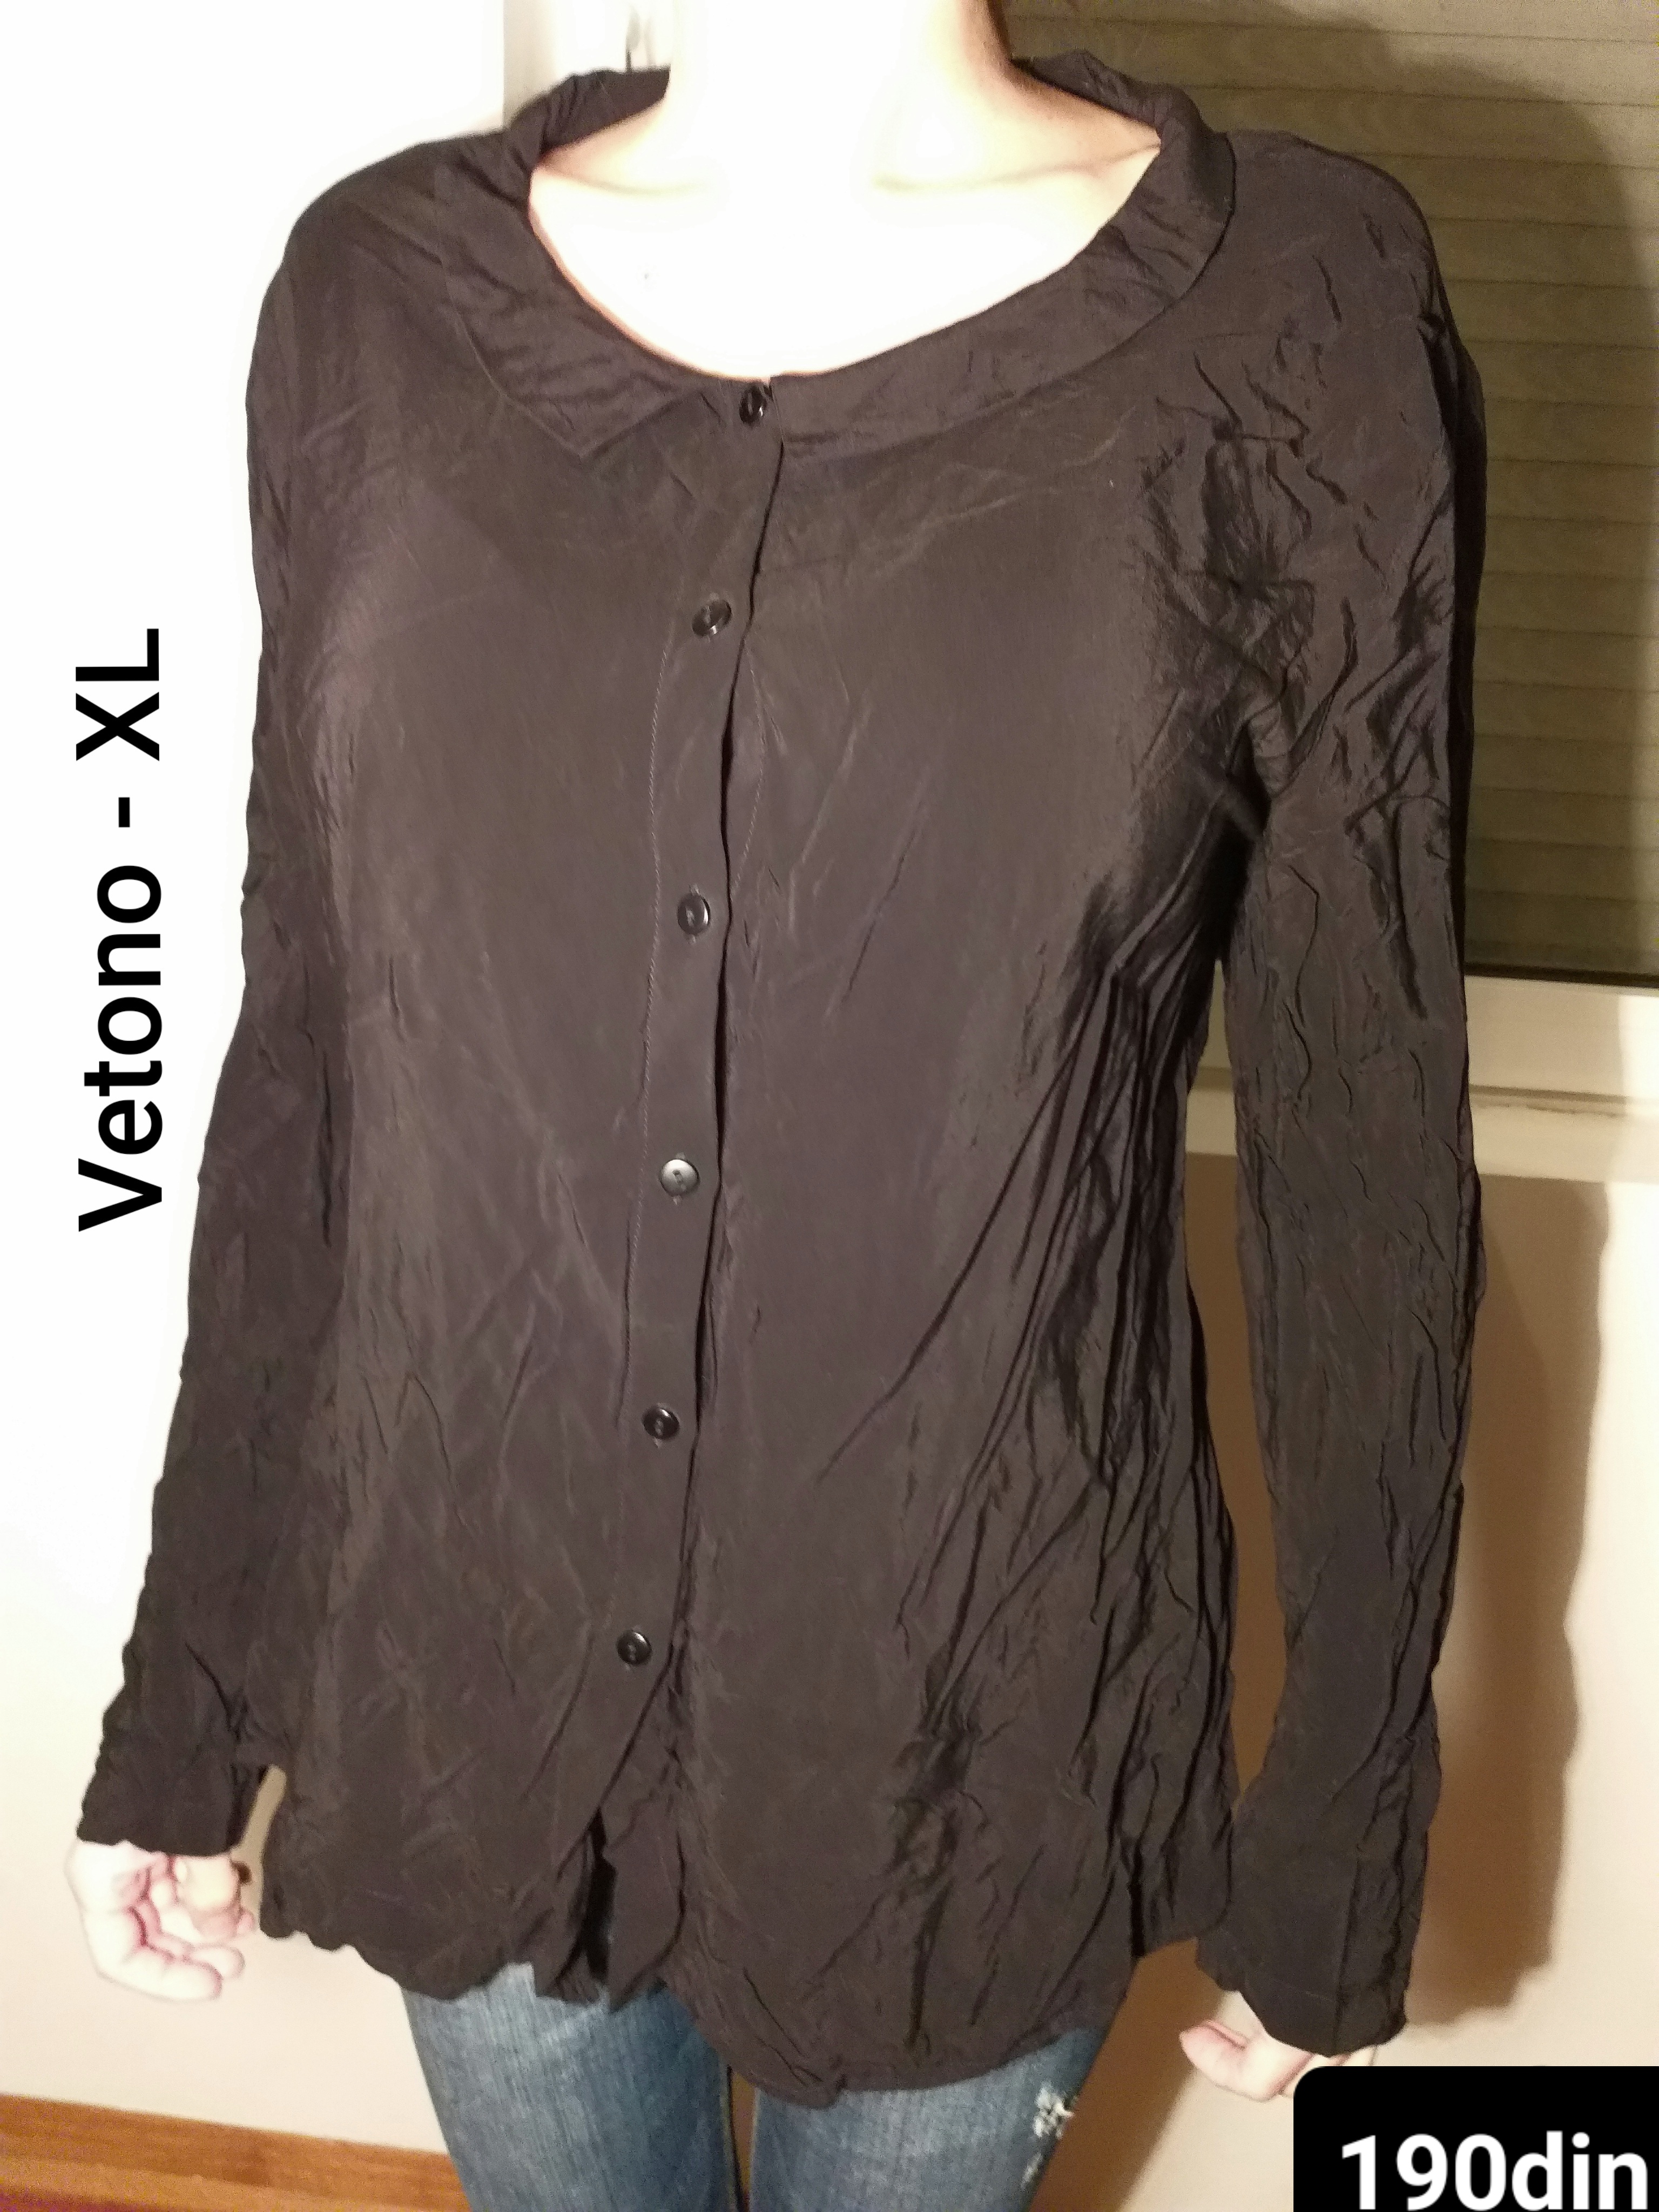 Vetono ženska košulja dug rukav crna XL/42